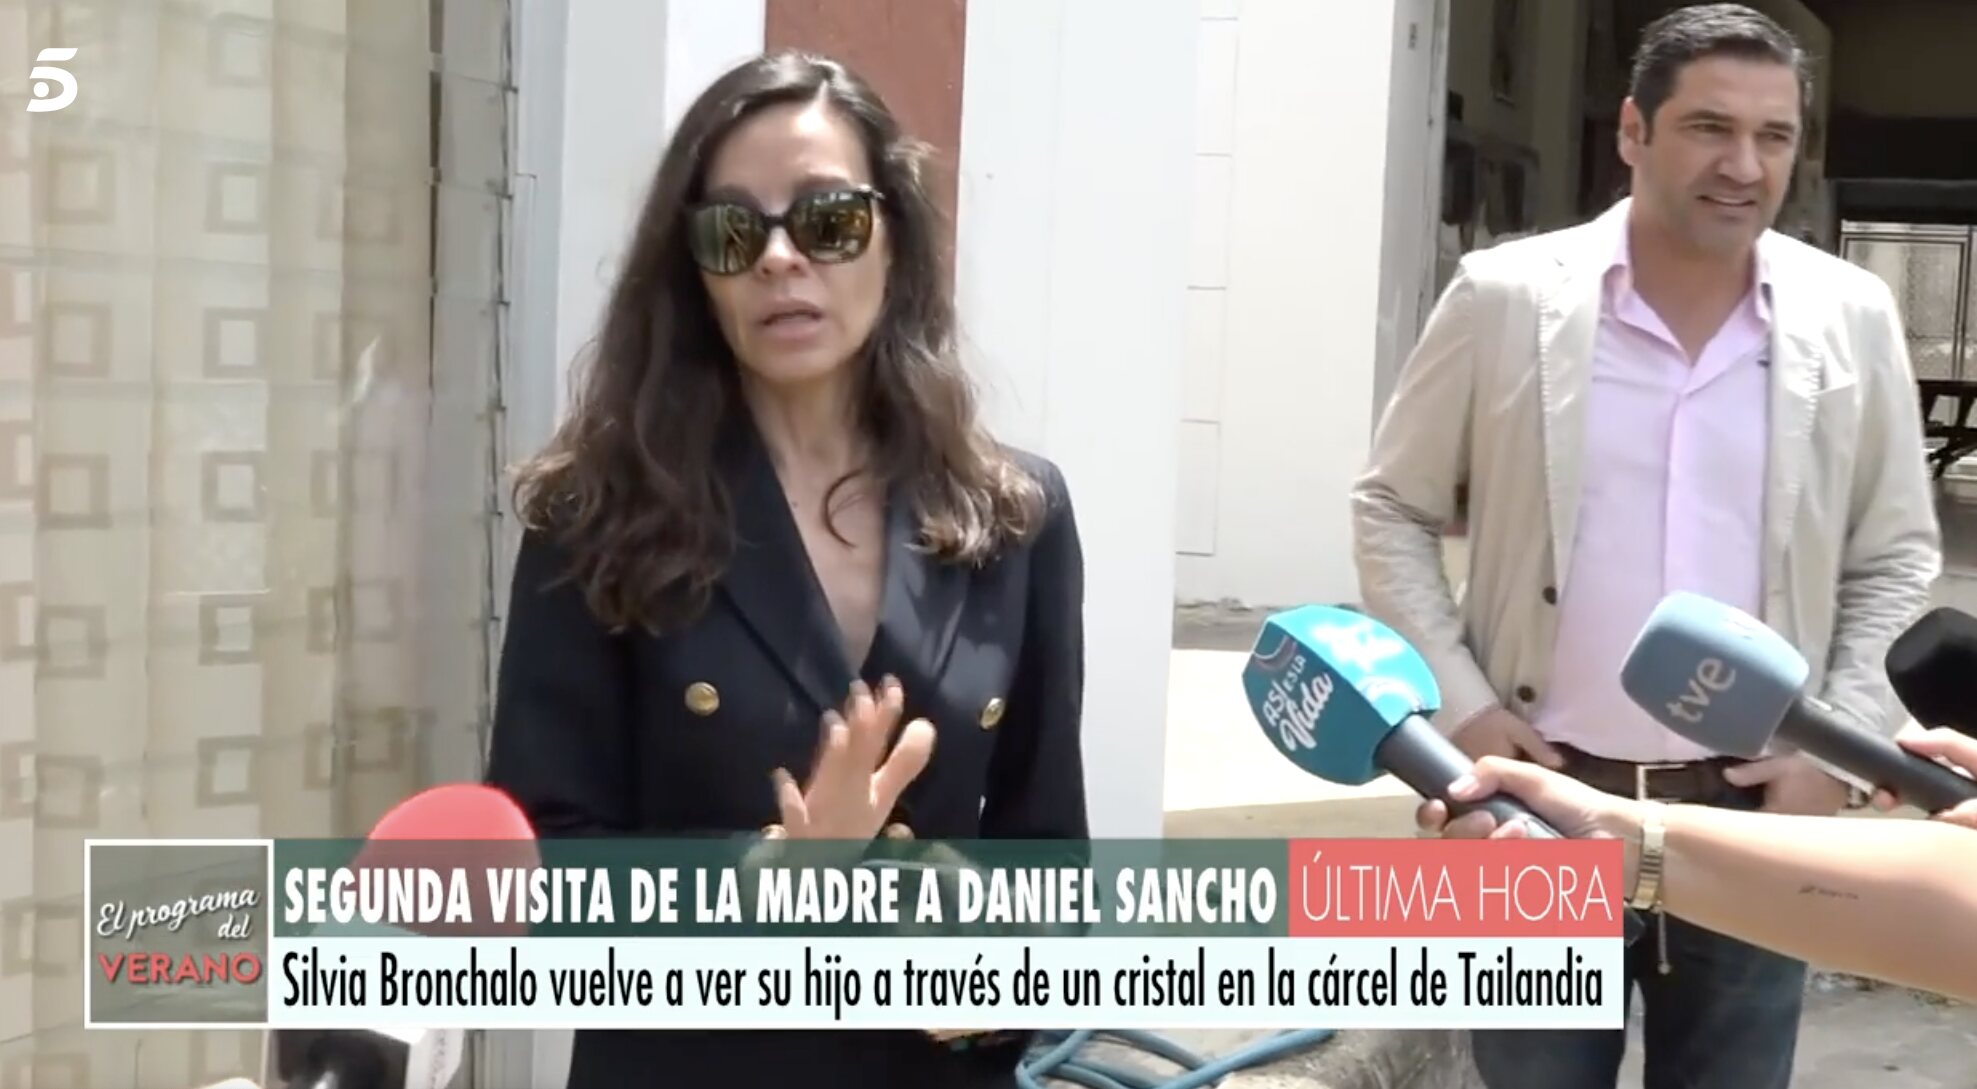 Silvia Bronchalo ha hablado con la prensa tras su segunda visita a Daniel Sancho | Foto: Telecinco.es